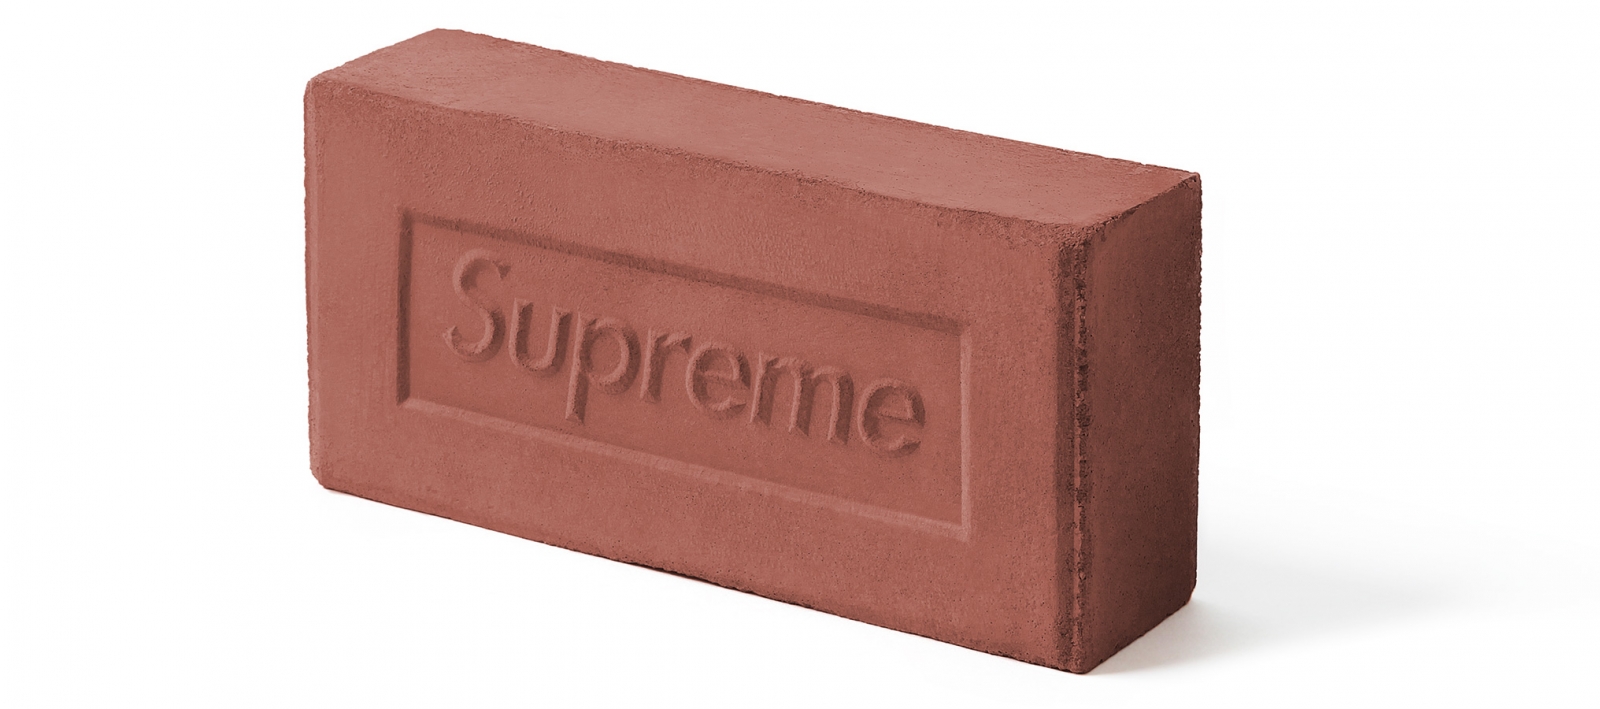 supreme-brick.jpg